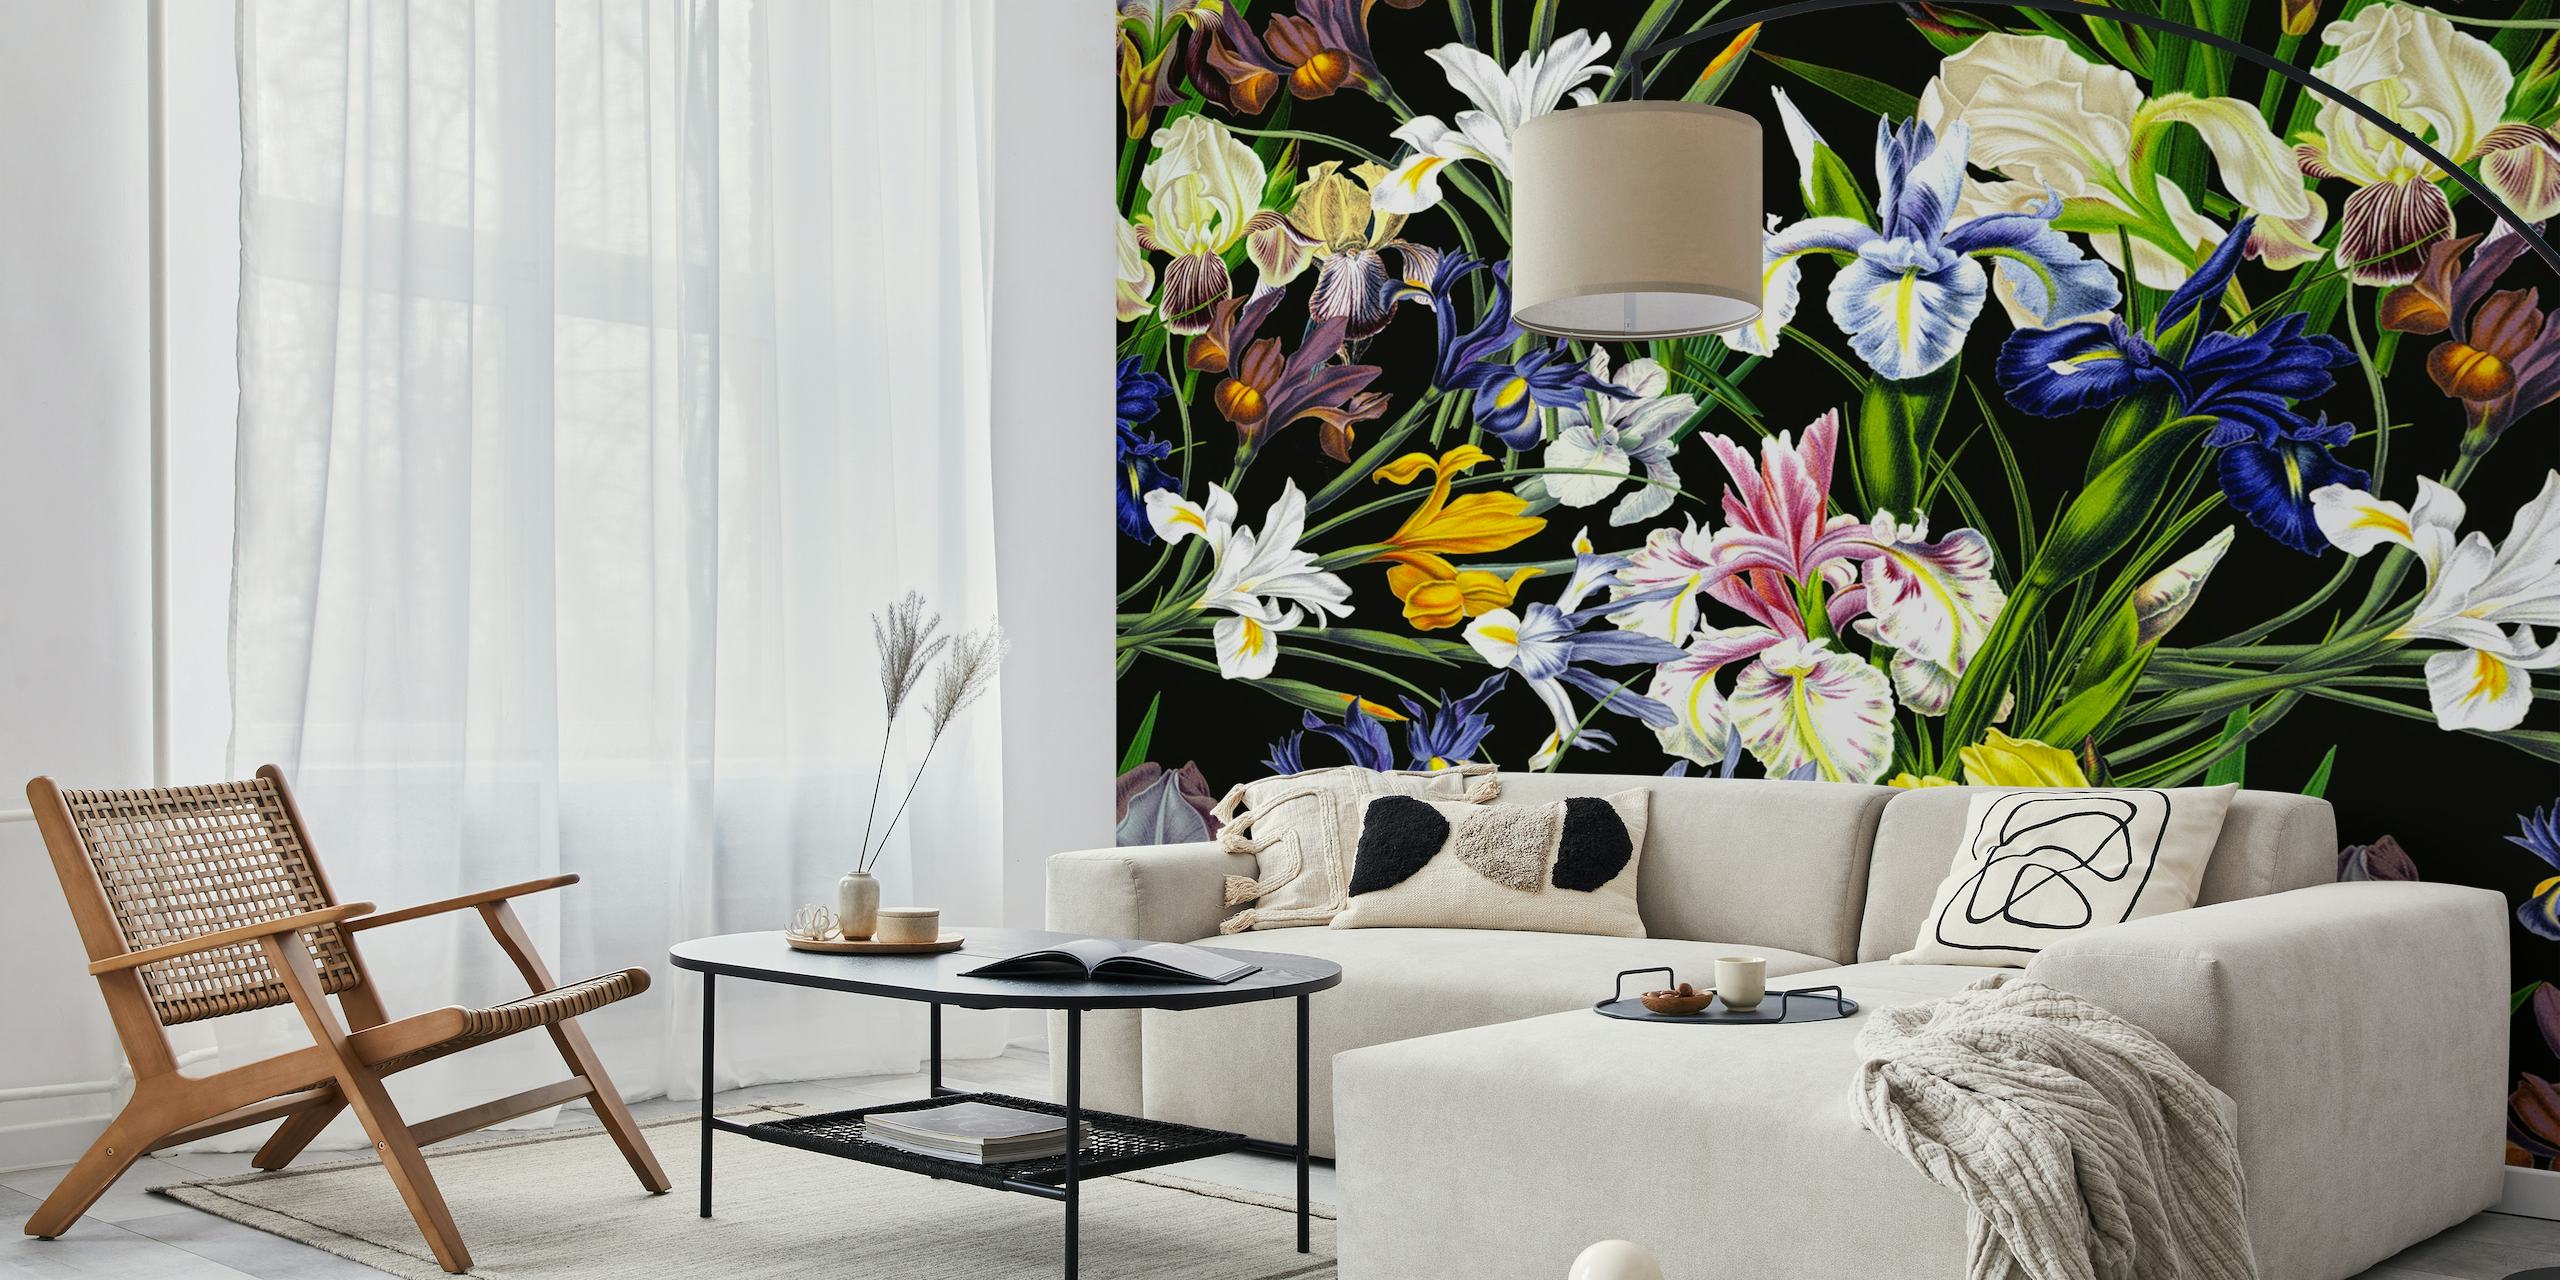 Zidna slika u vintage stilu s gustim uzorkom šarenih irisa na tamnoj pozadini evocira raskošnu baroknu atmosferu.